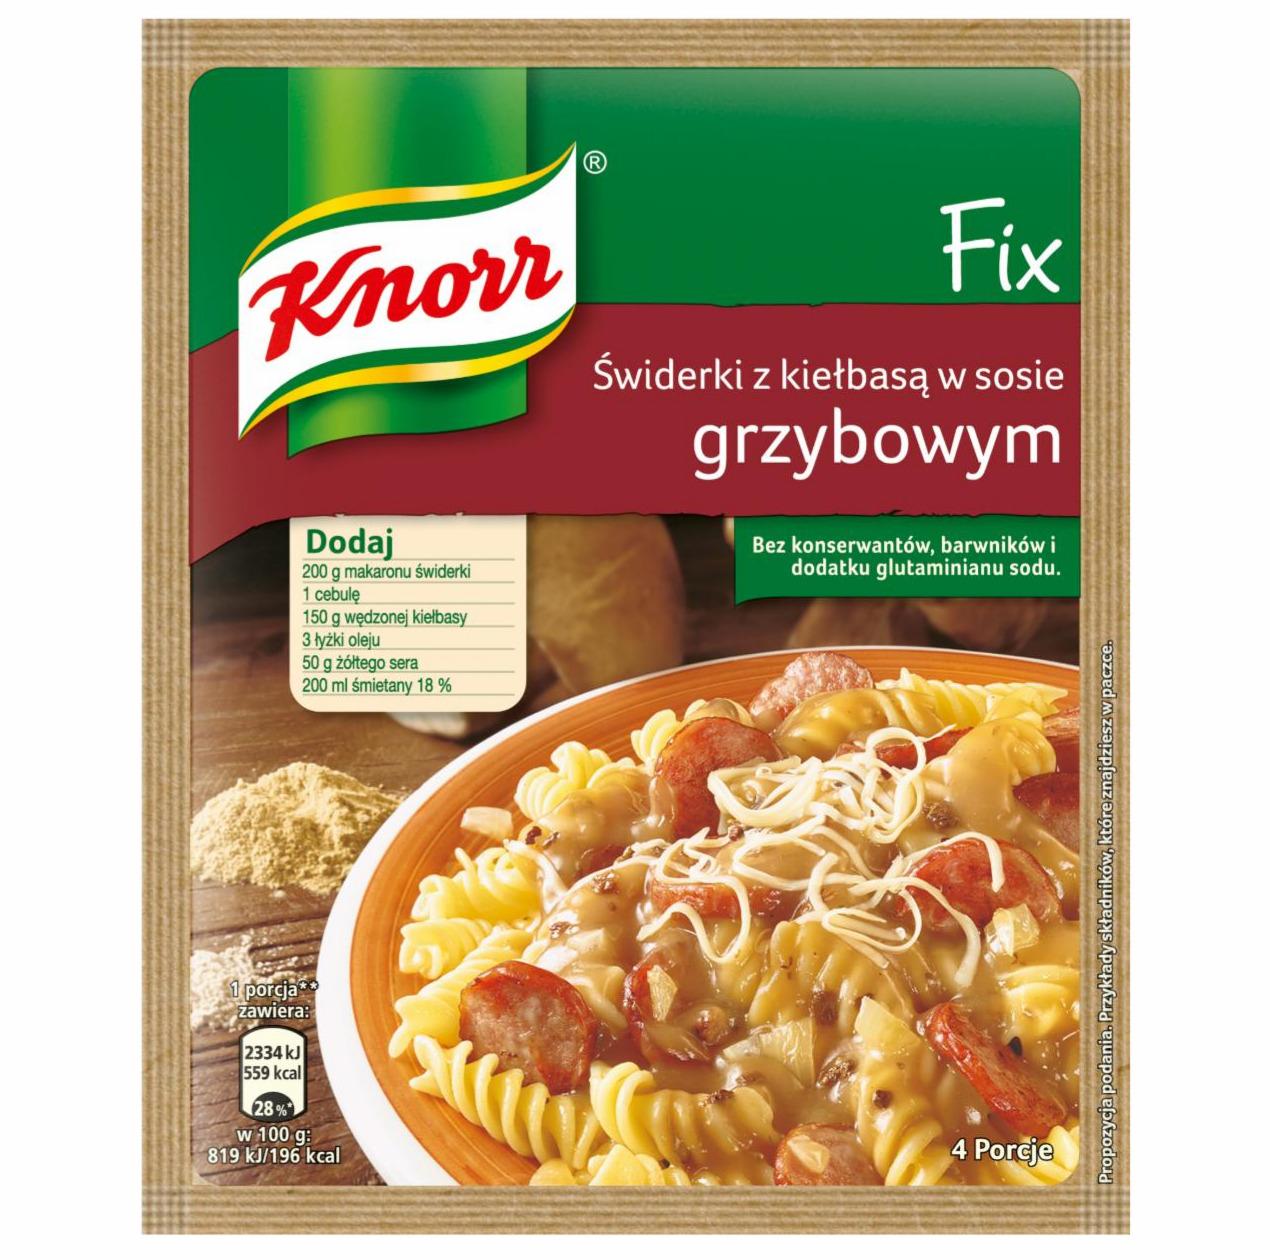 Zdjęcia - Fix świderki z kiełbasą w sosie grzybowym Knorr